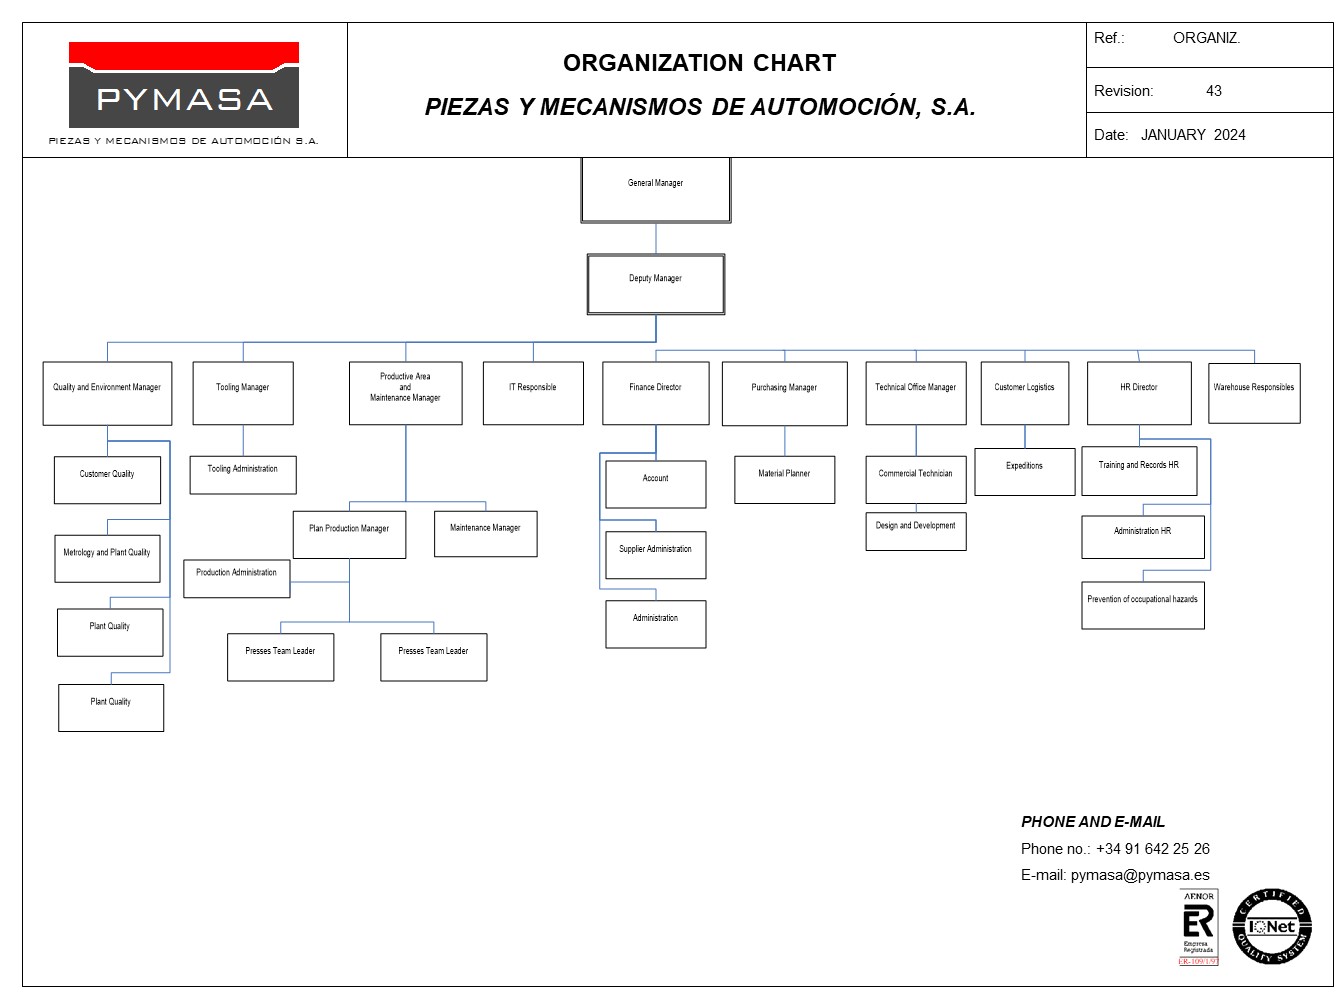 Organization Chart January 2024